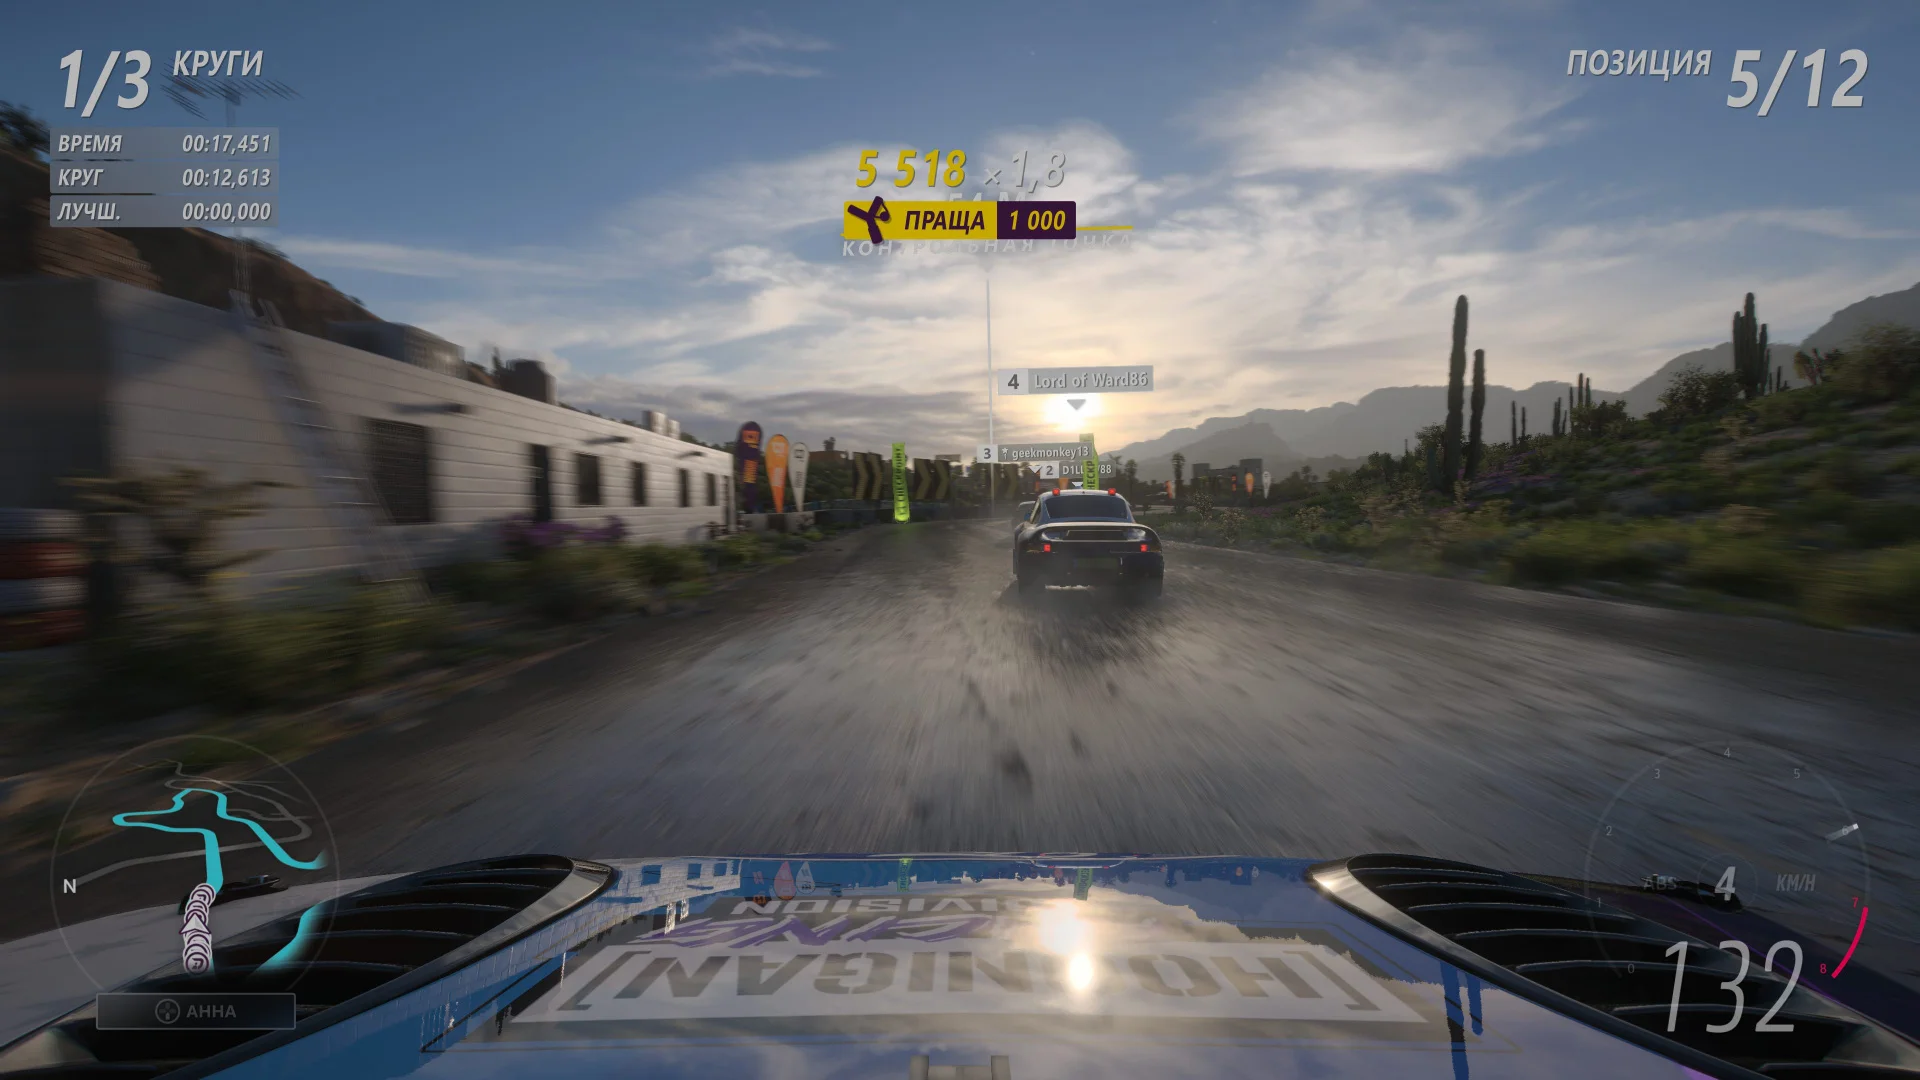 20 часов в Forza Horizon 5: почти обзор лучшей некстген-гонки этого года - фото 10